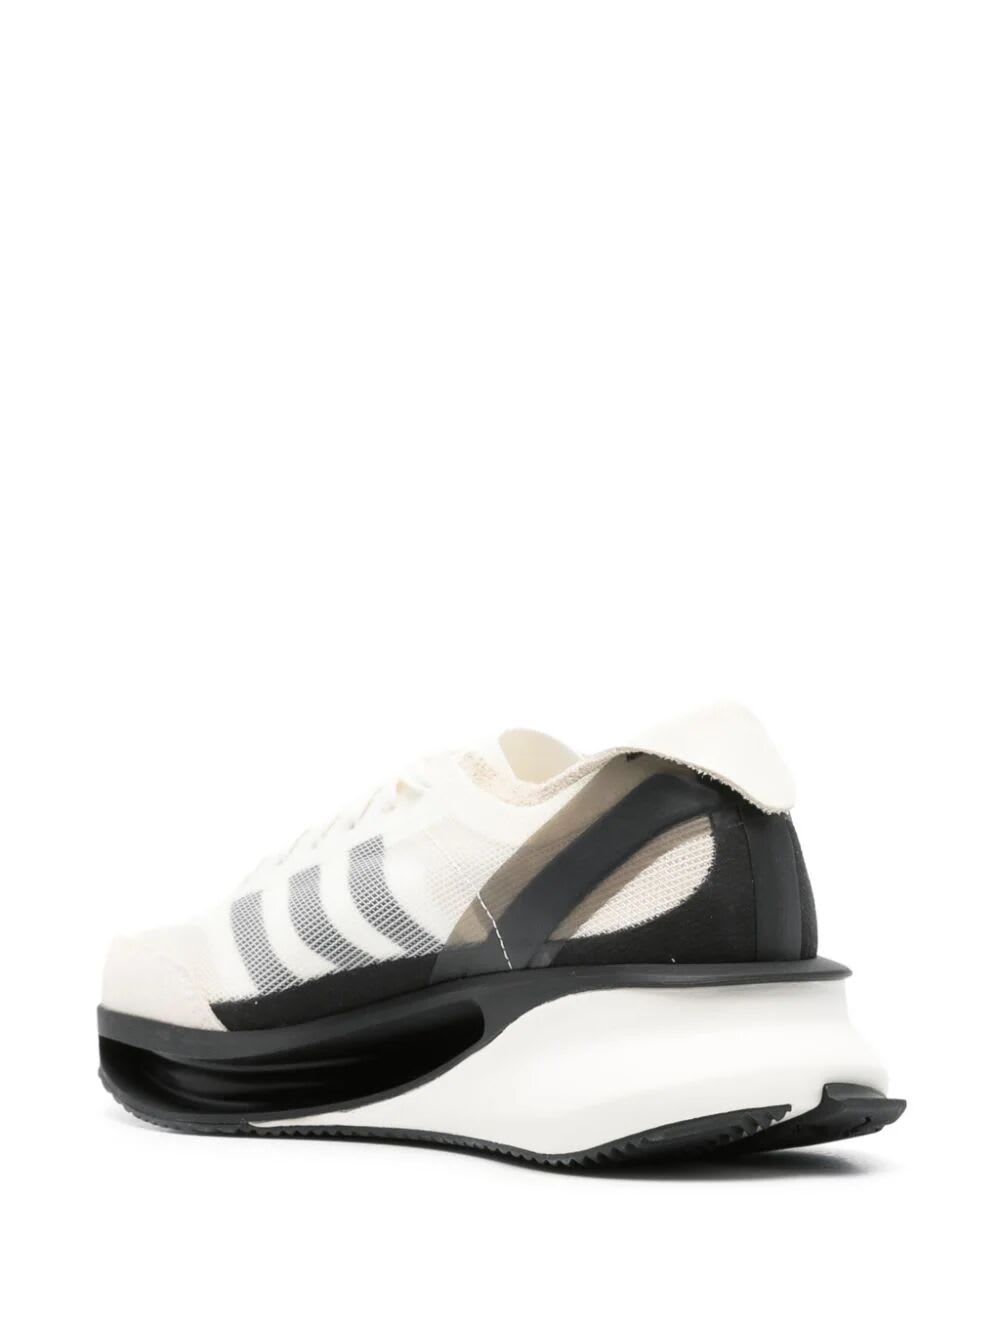 Shop Y-3 Gendo Run Sneakers In Owhite Cream